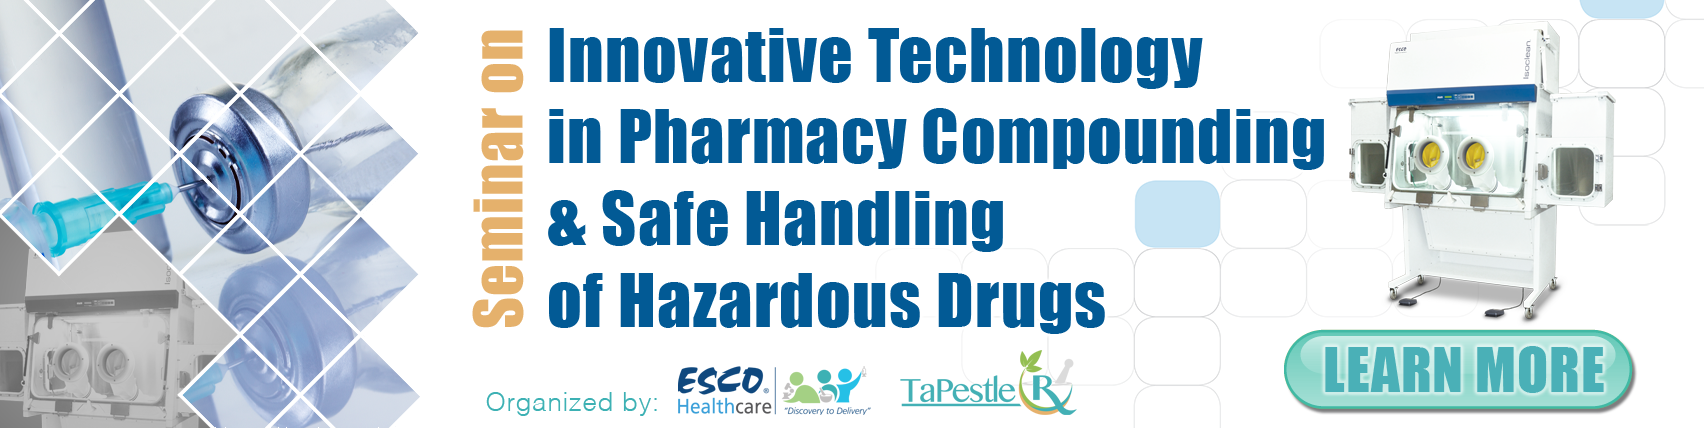 Seminar on Innovative Technology in Pharmacy Compounding & Safe Handling of Hazardous Drugs